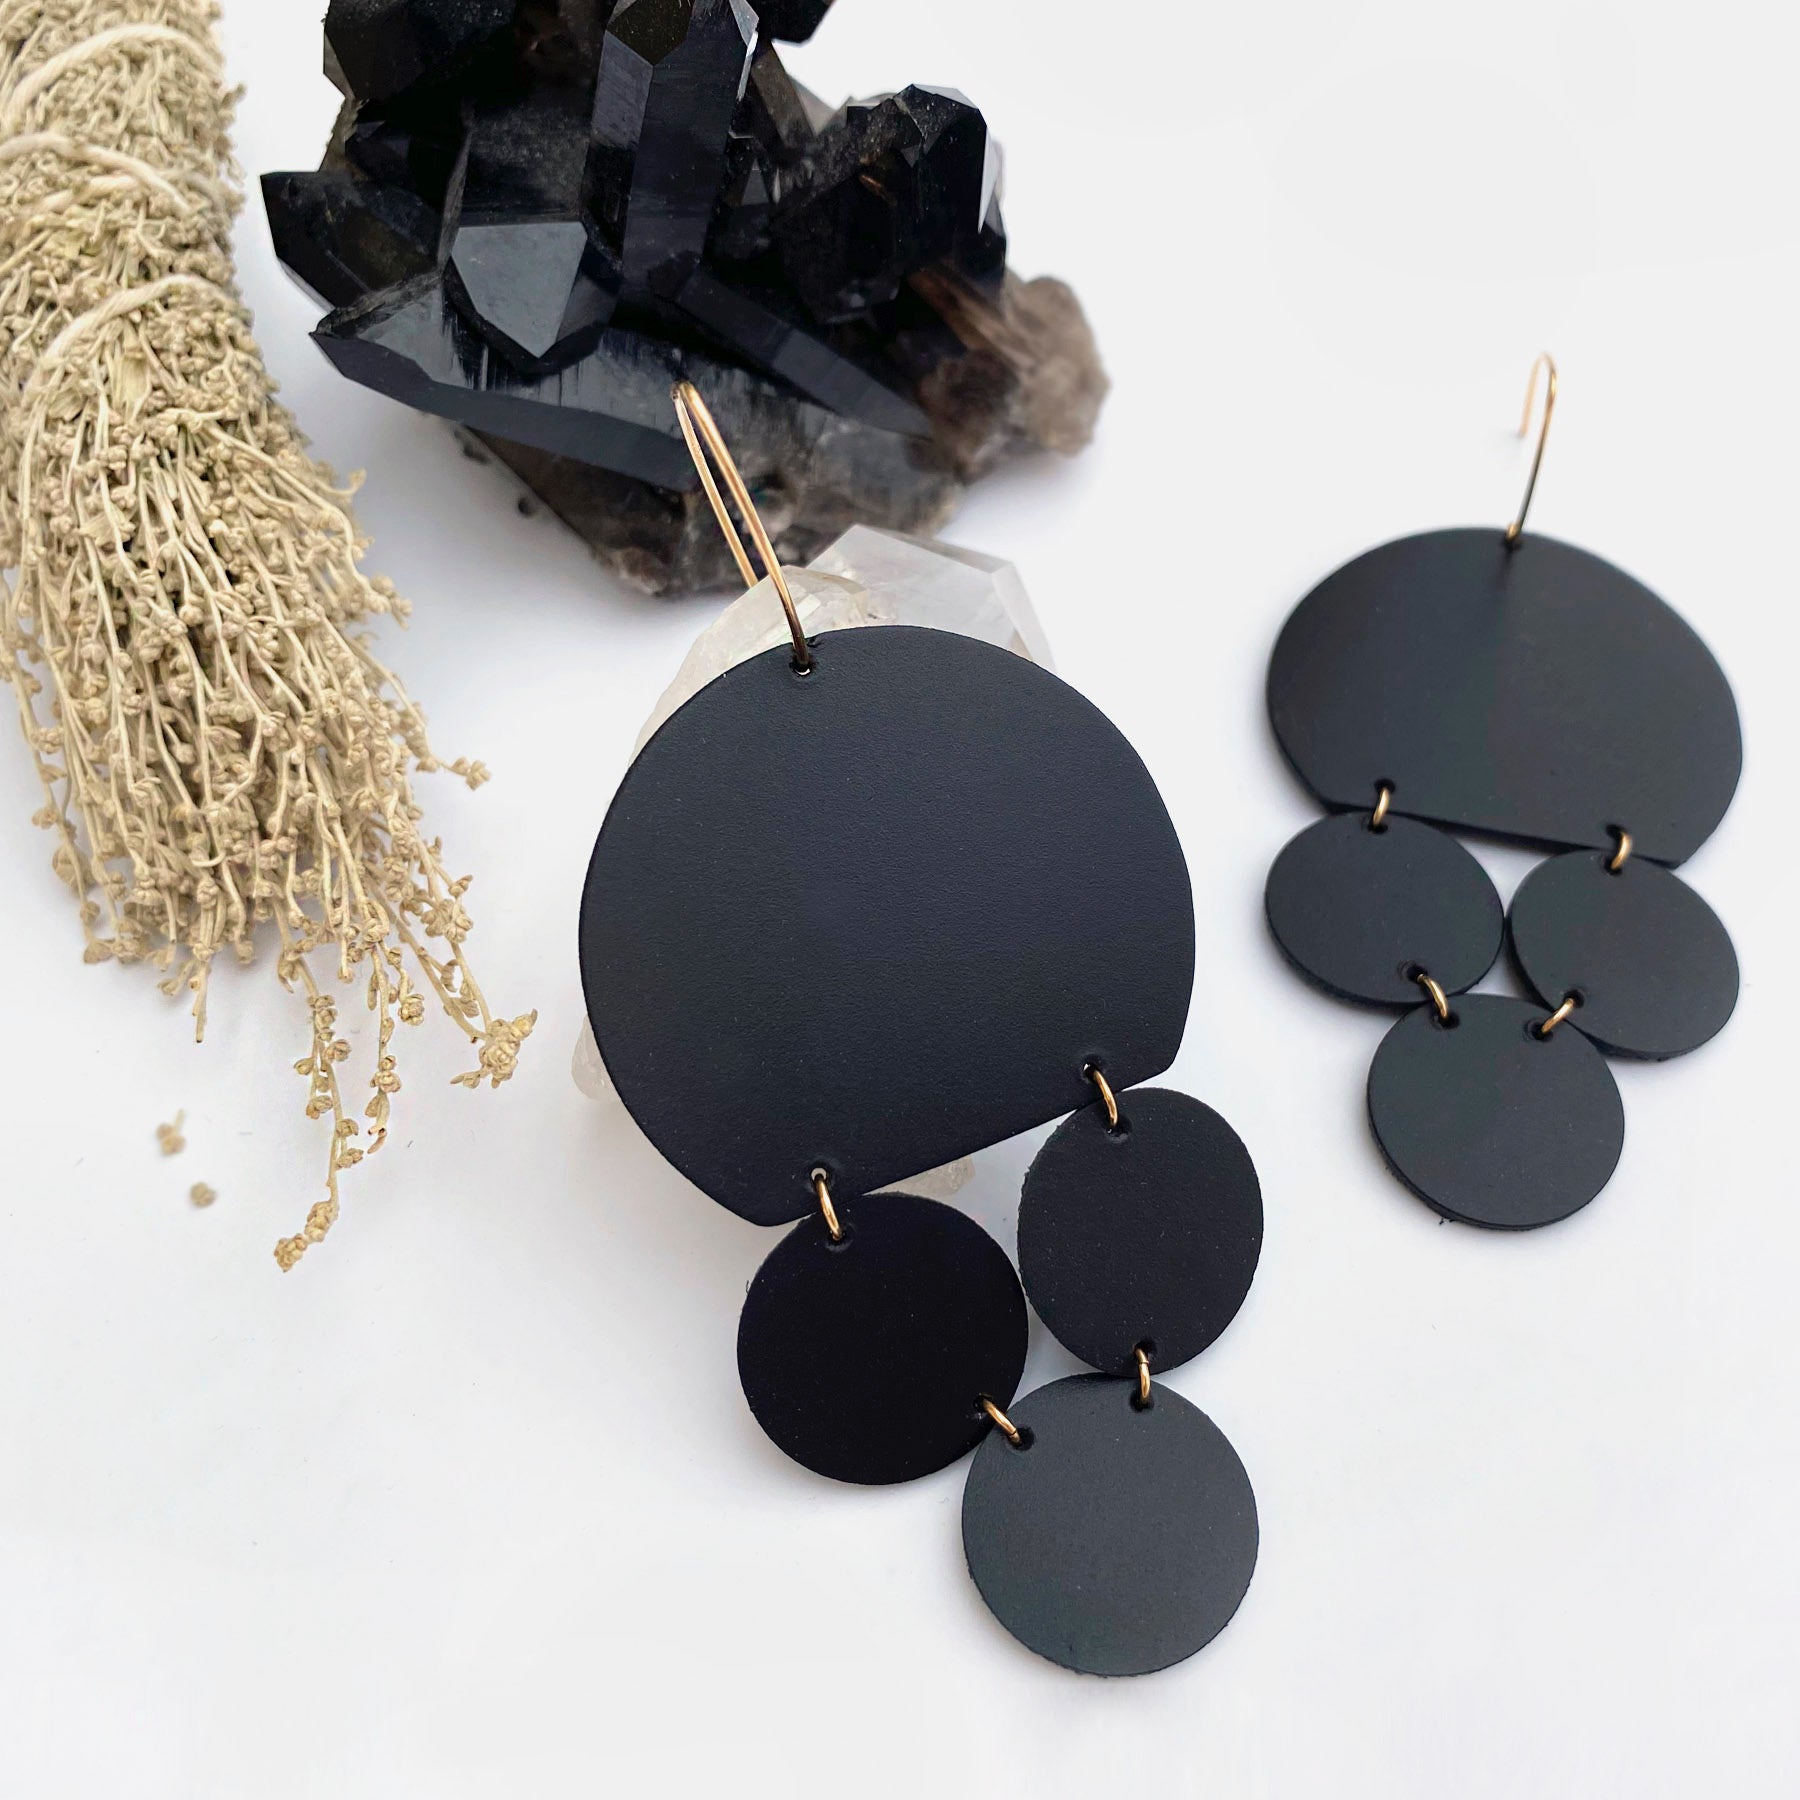 Buy Black Leather Earring Earrings for Women Handmade Gift for Online in  India  Etsy